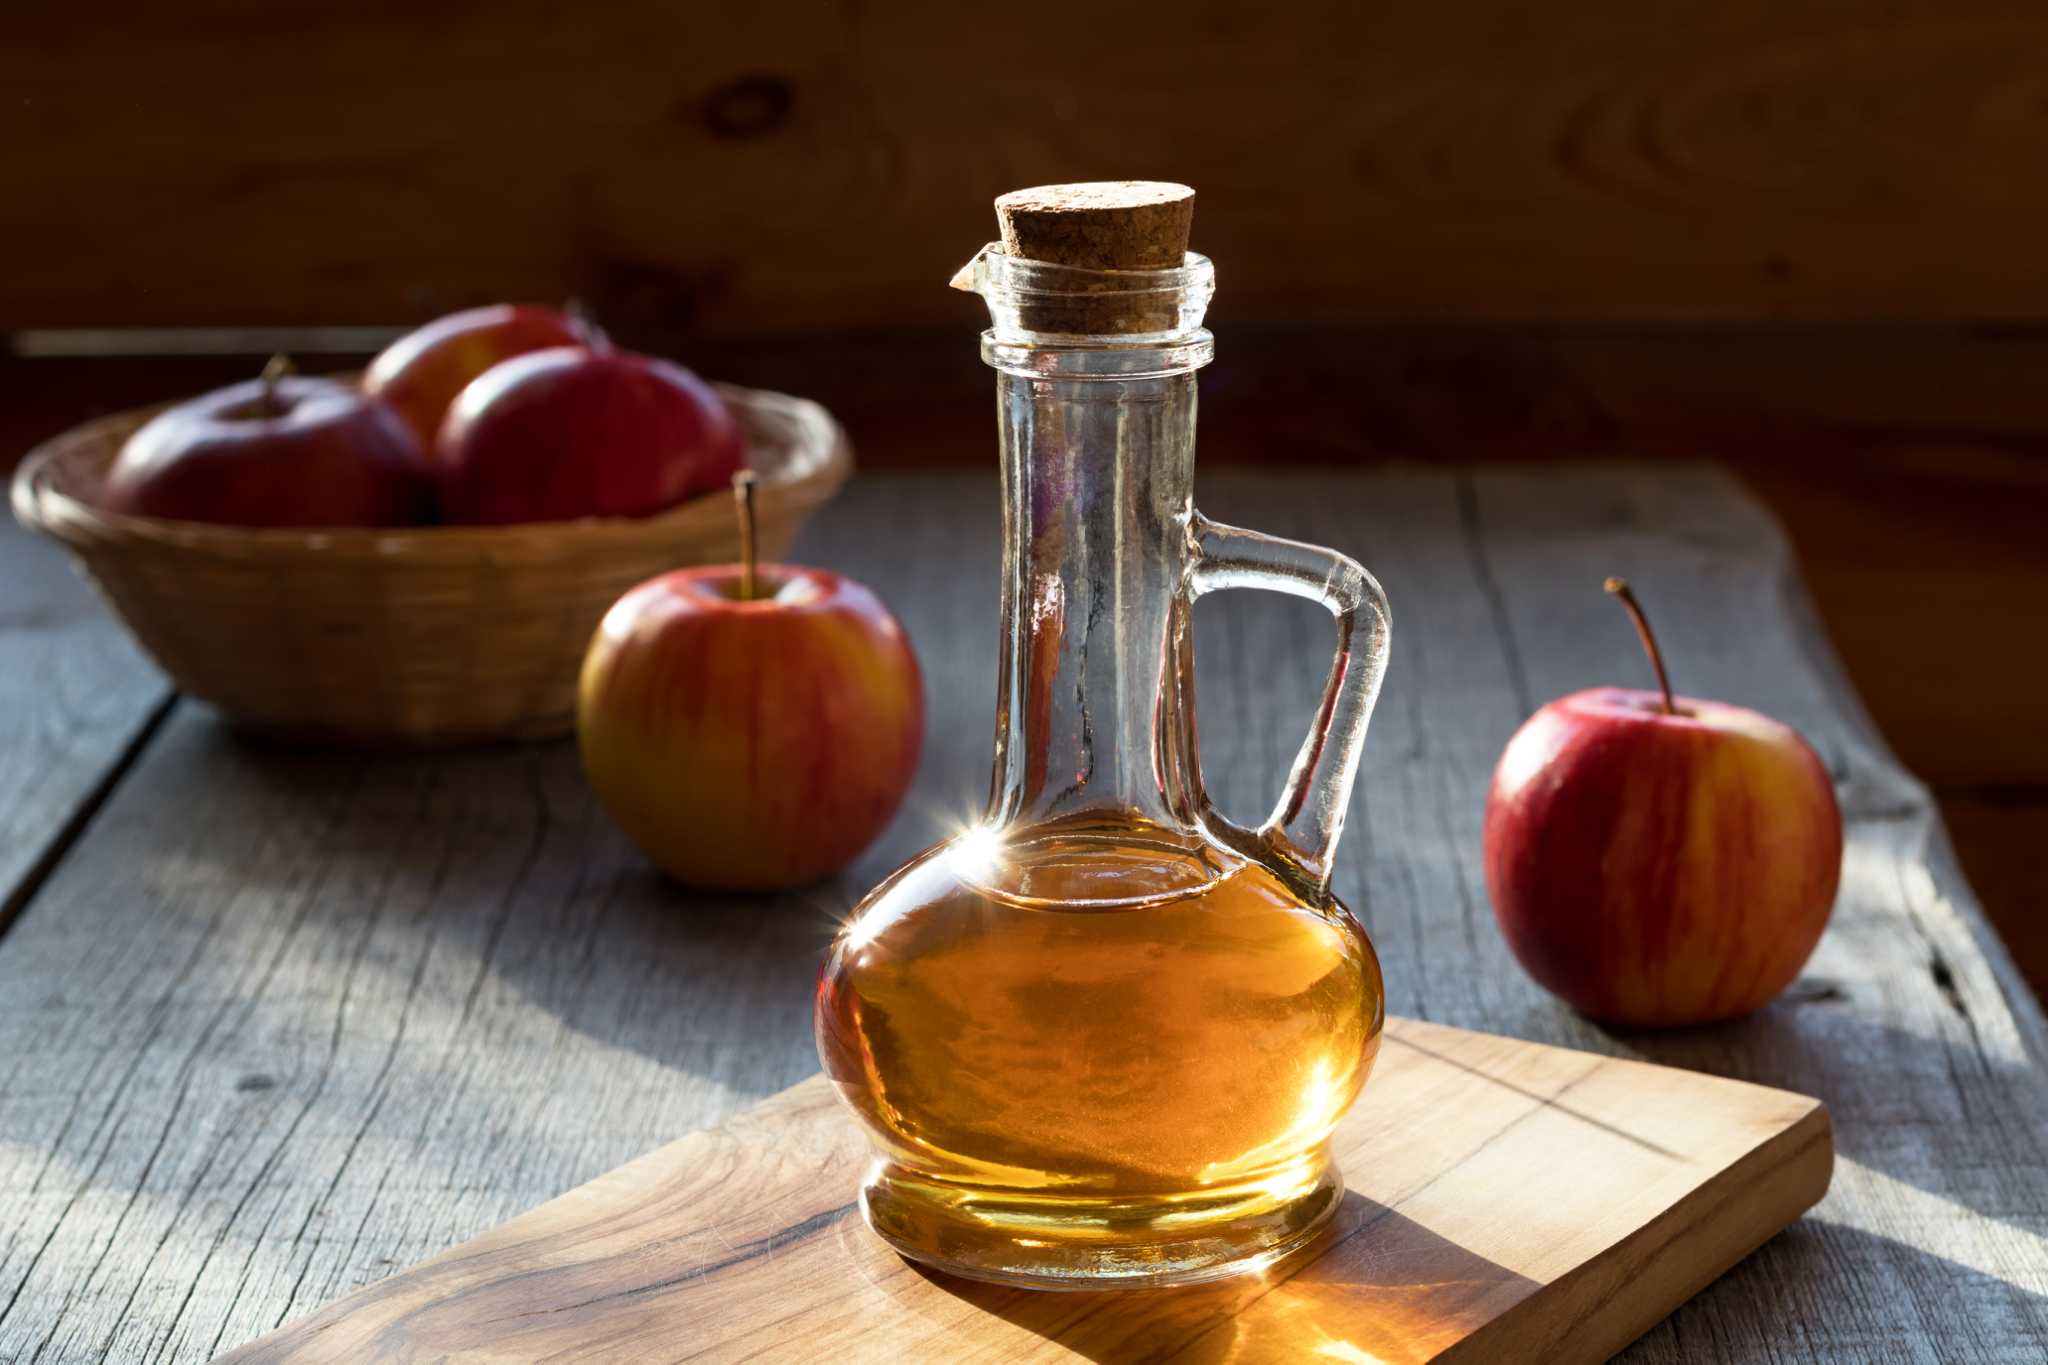 Clean Wood Floors With Apple Cider Vinegar